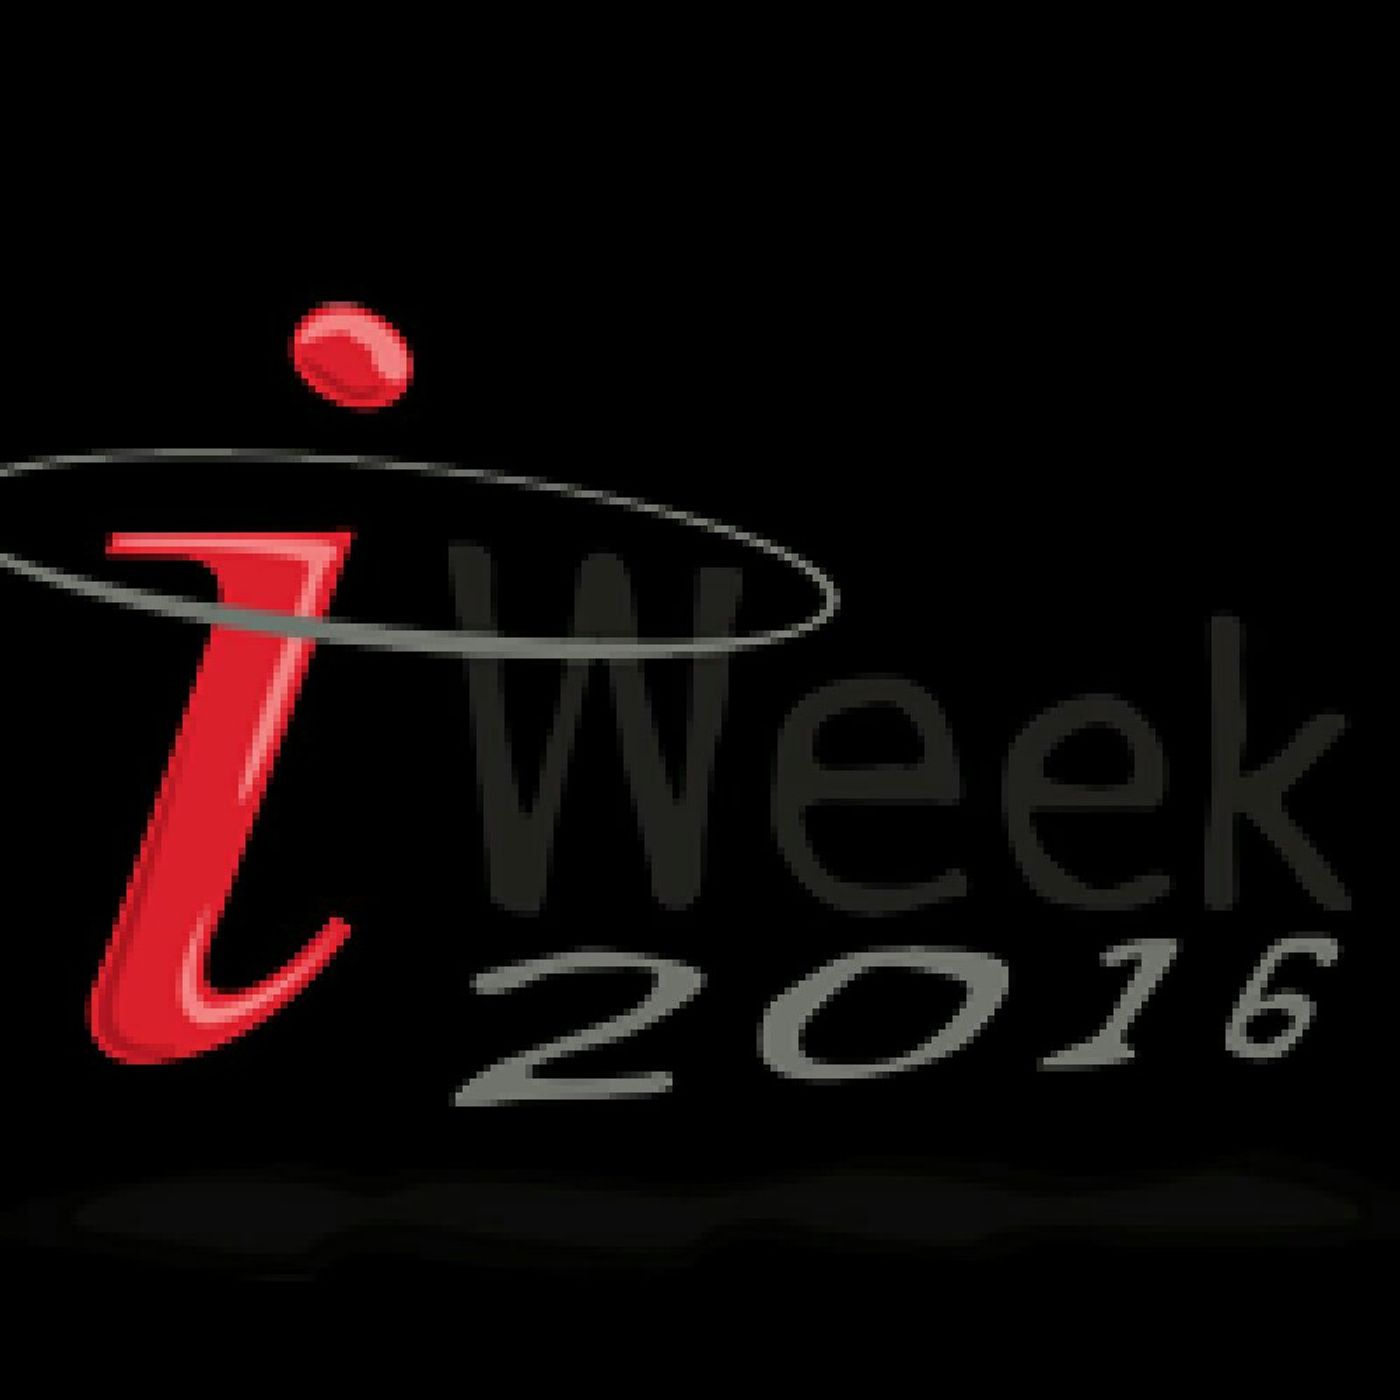 Iweek 2016